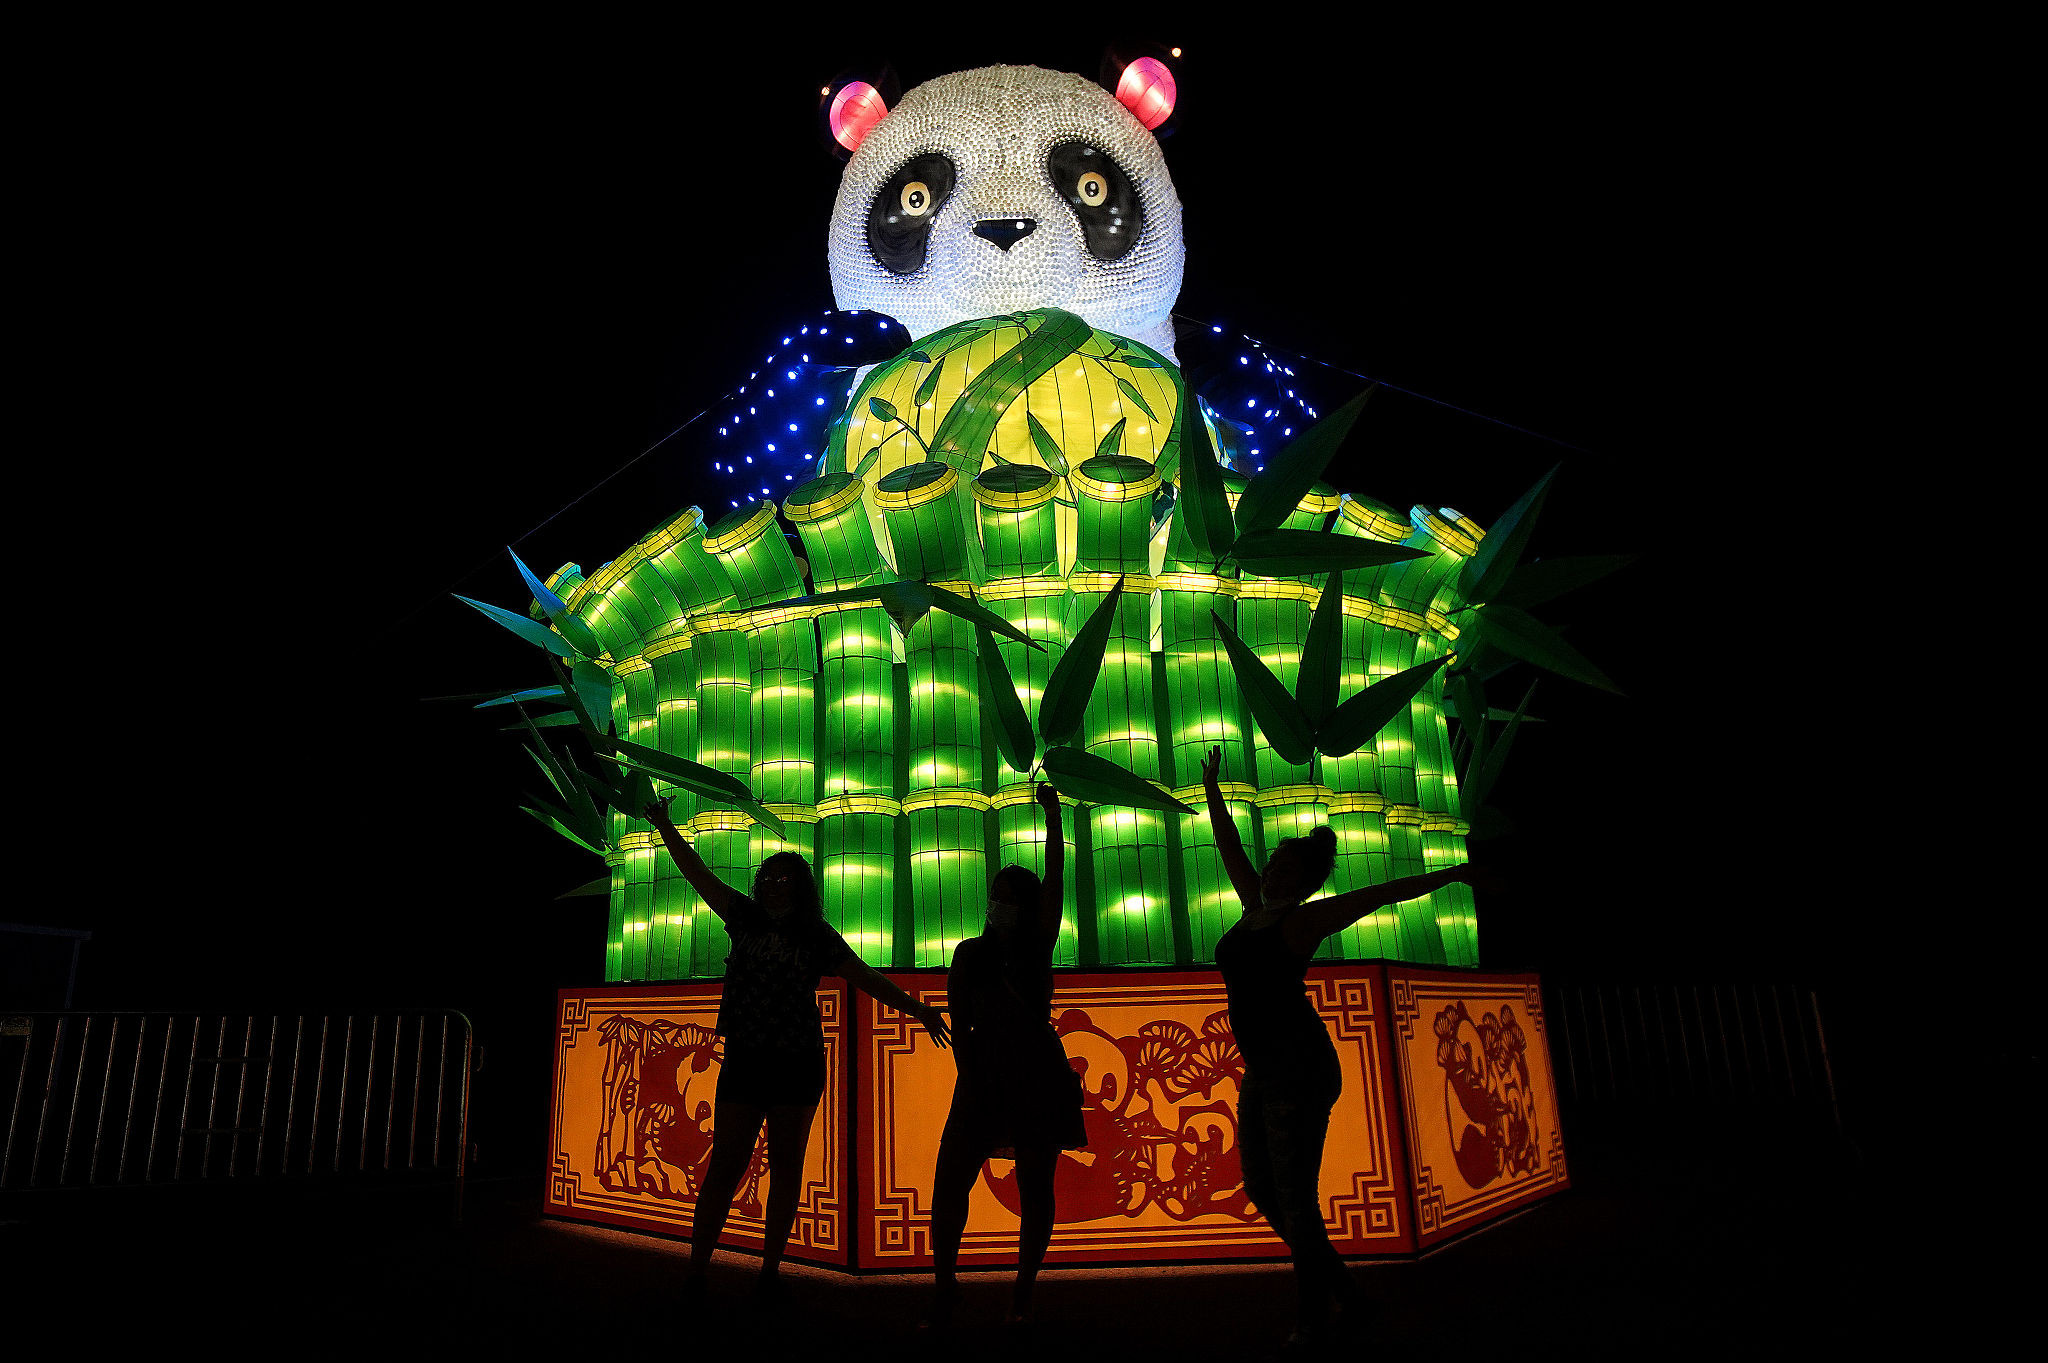 美国波士顿举行花灯展大熊猫中国龙成亮点